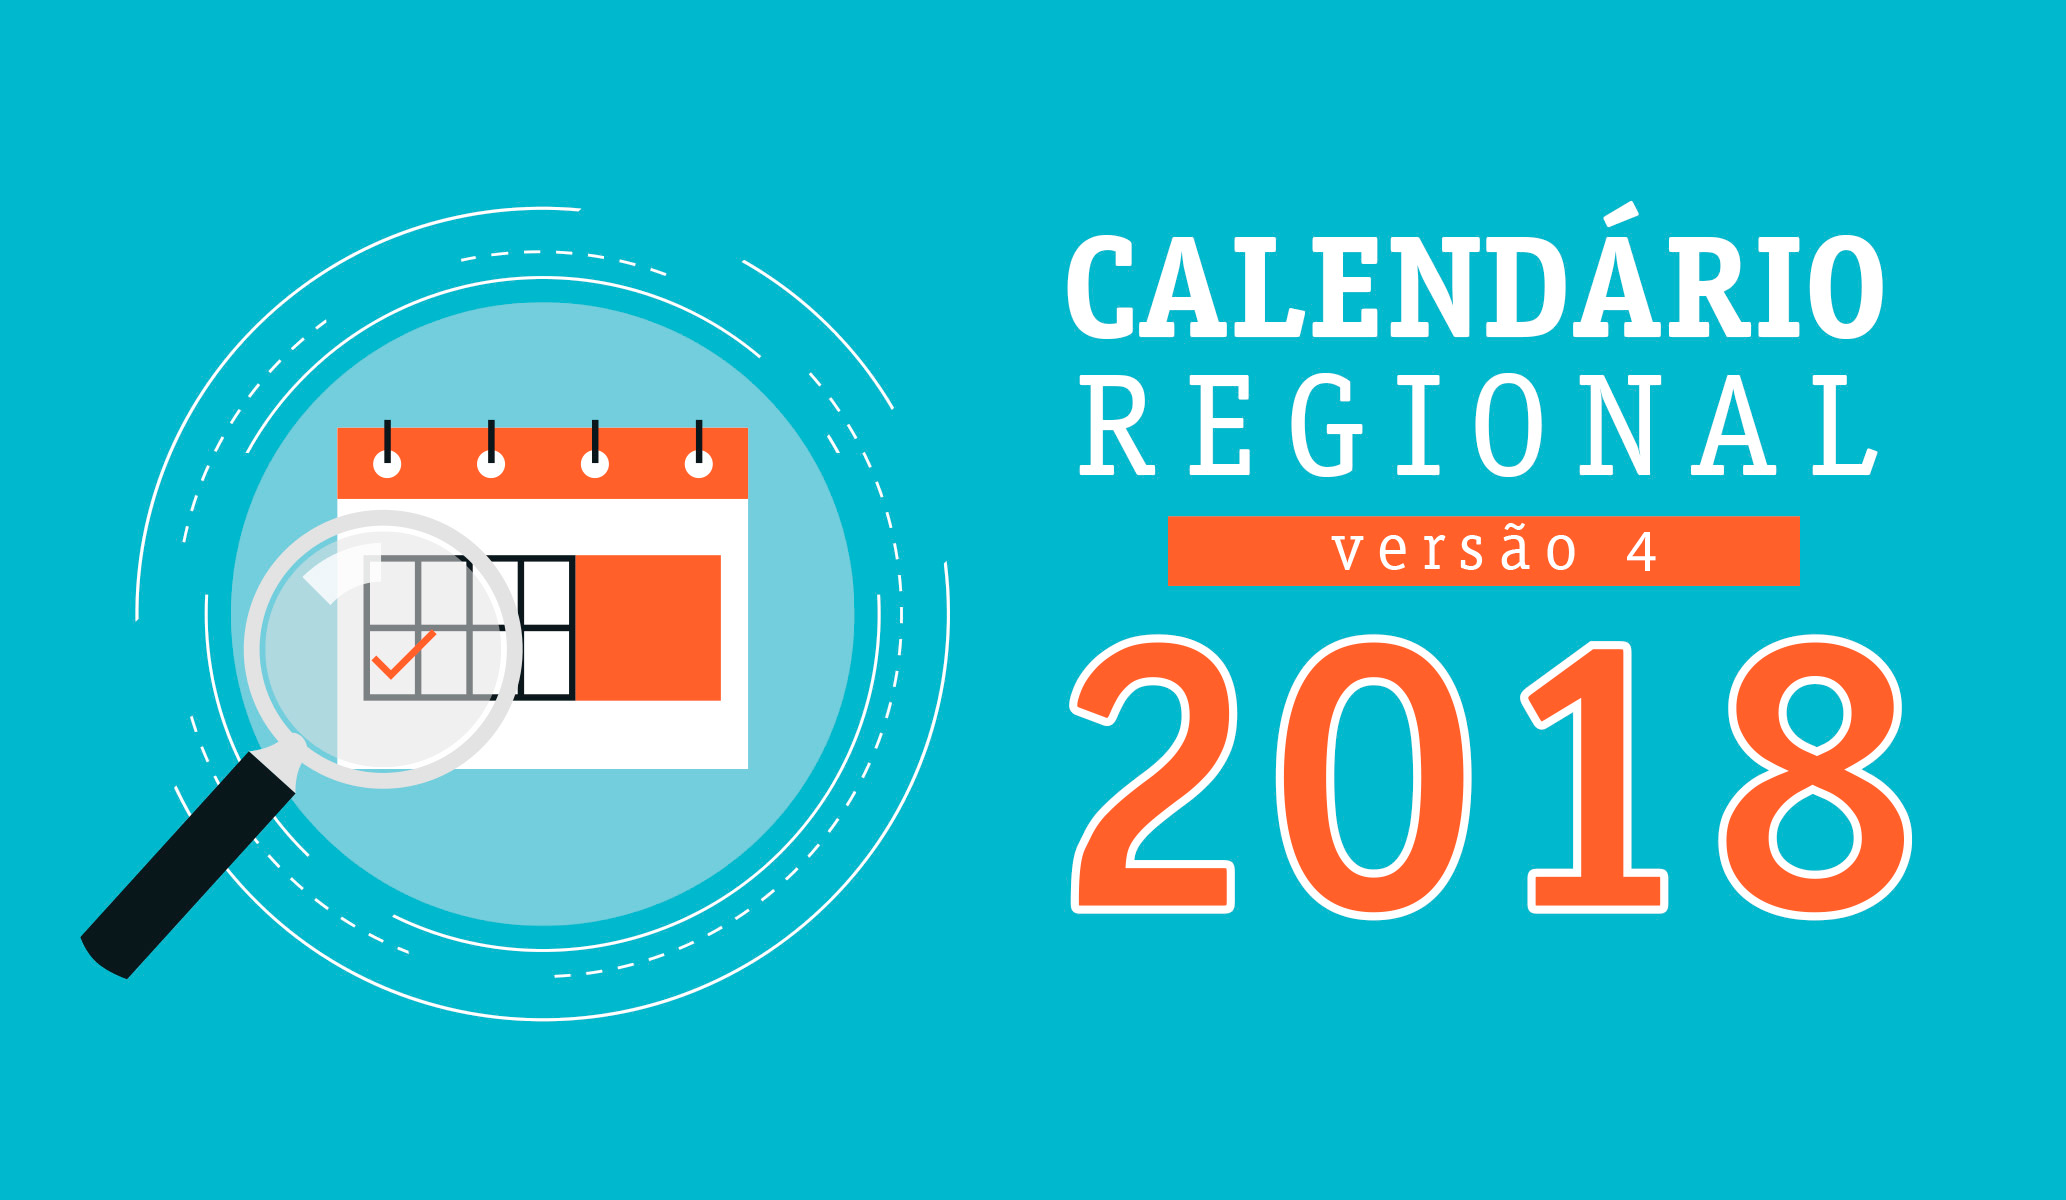 Versão 4 do Calendário Regional 2018